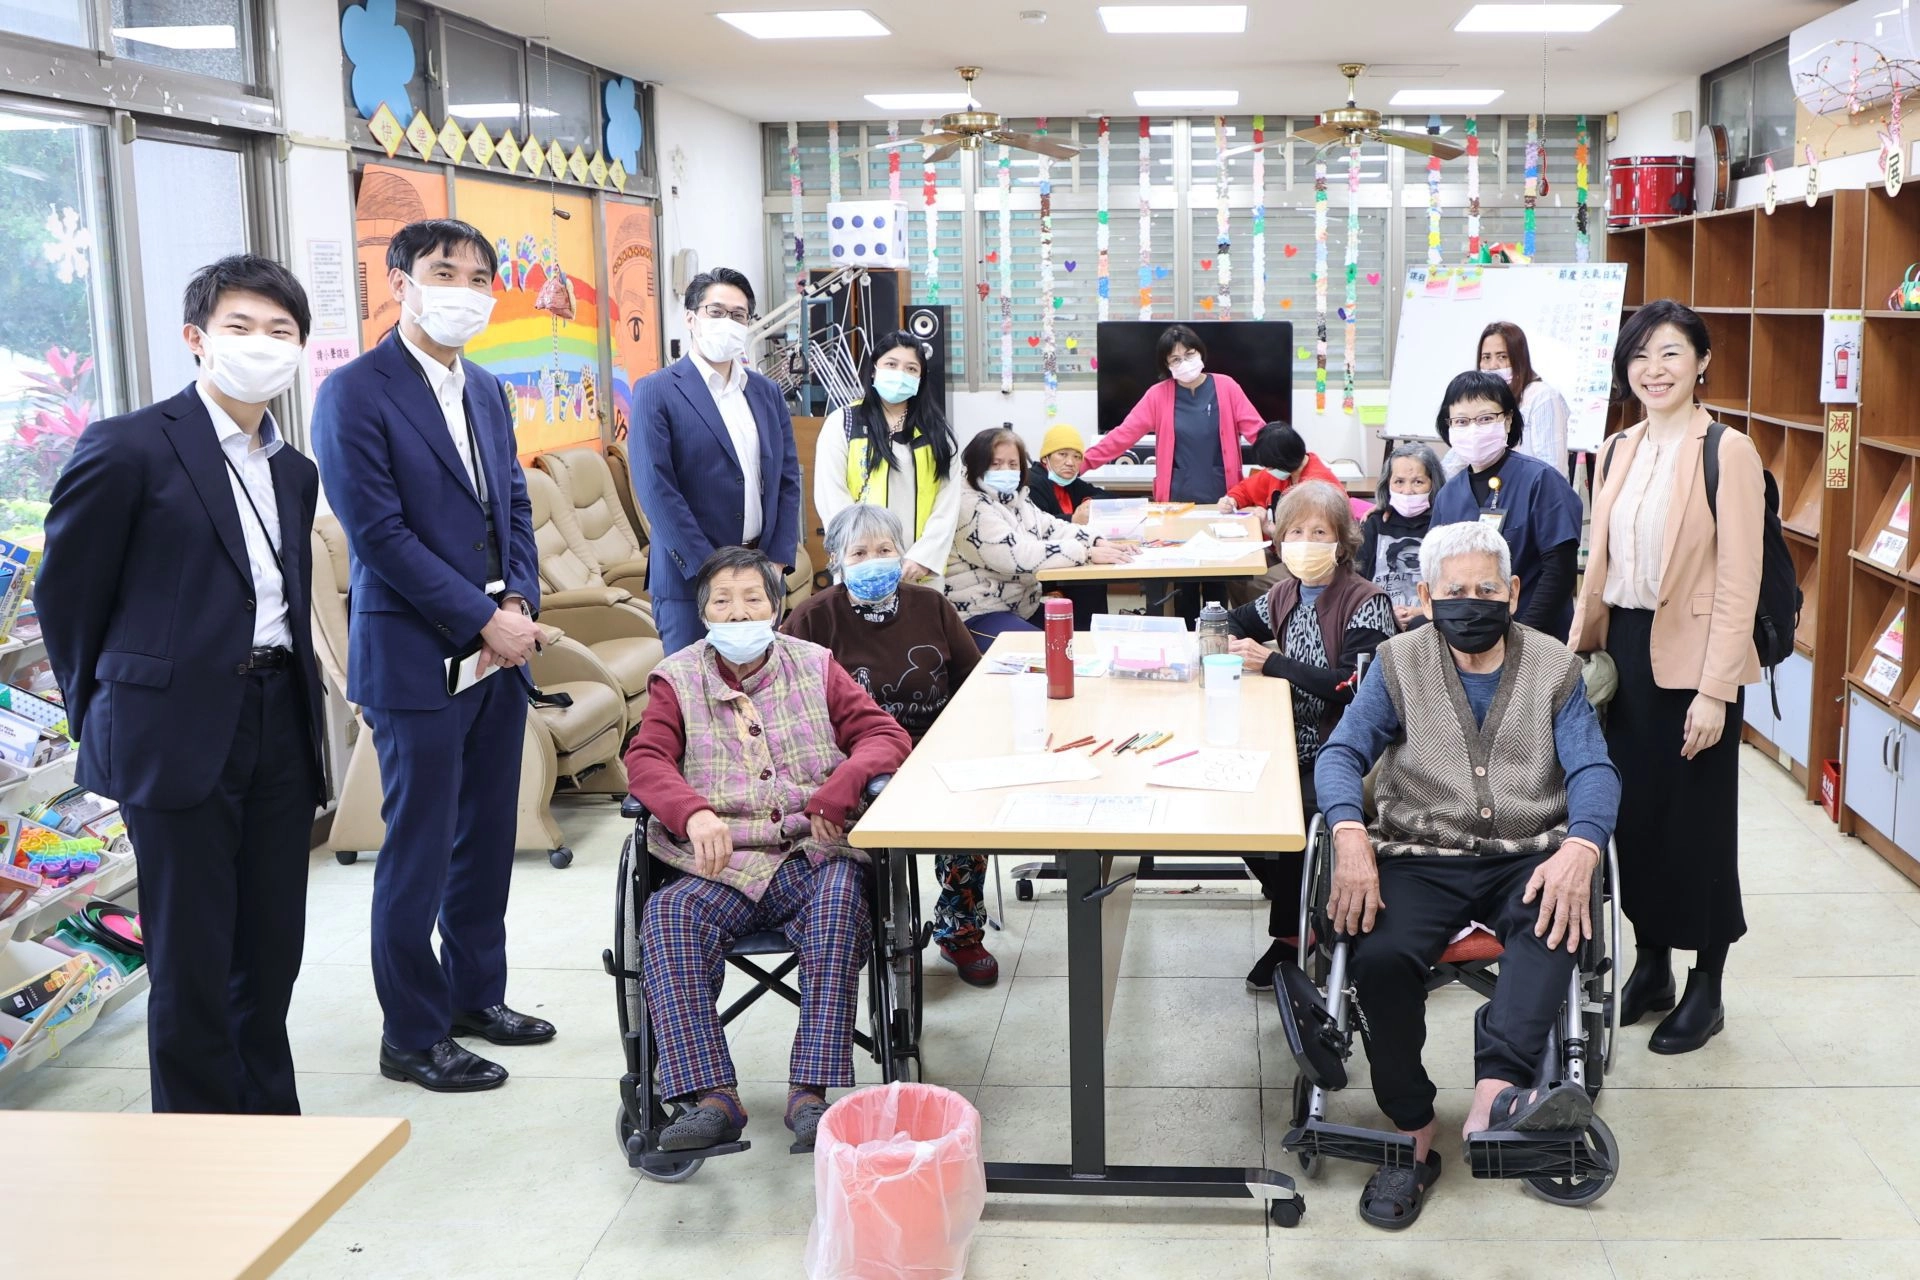 日本總研一行人實地走訪秀林鄉衛生所、失智據點進行交流。